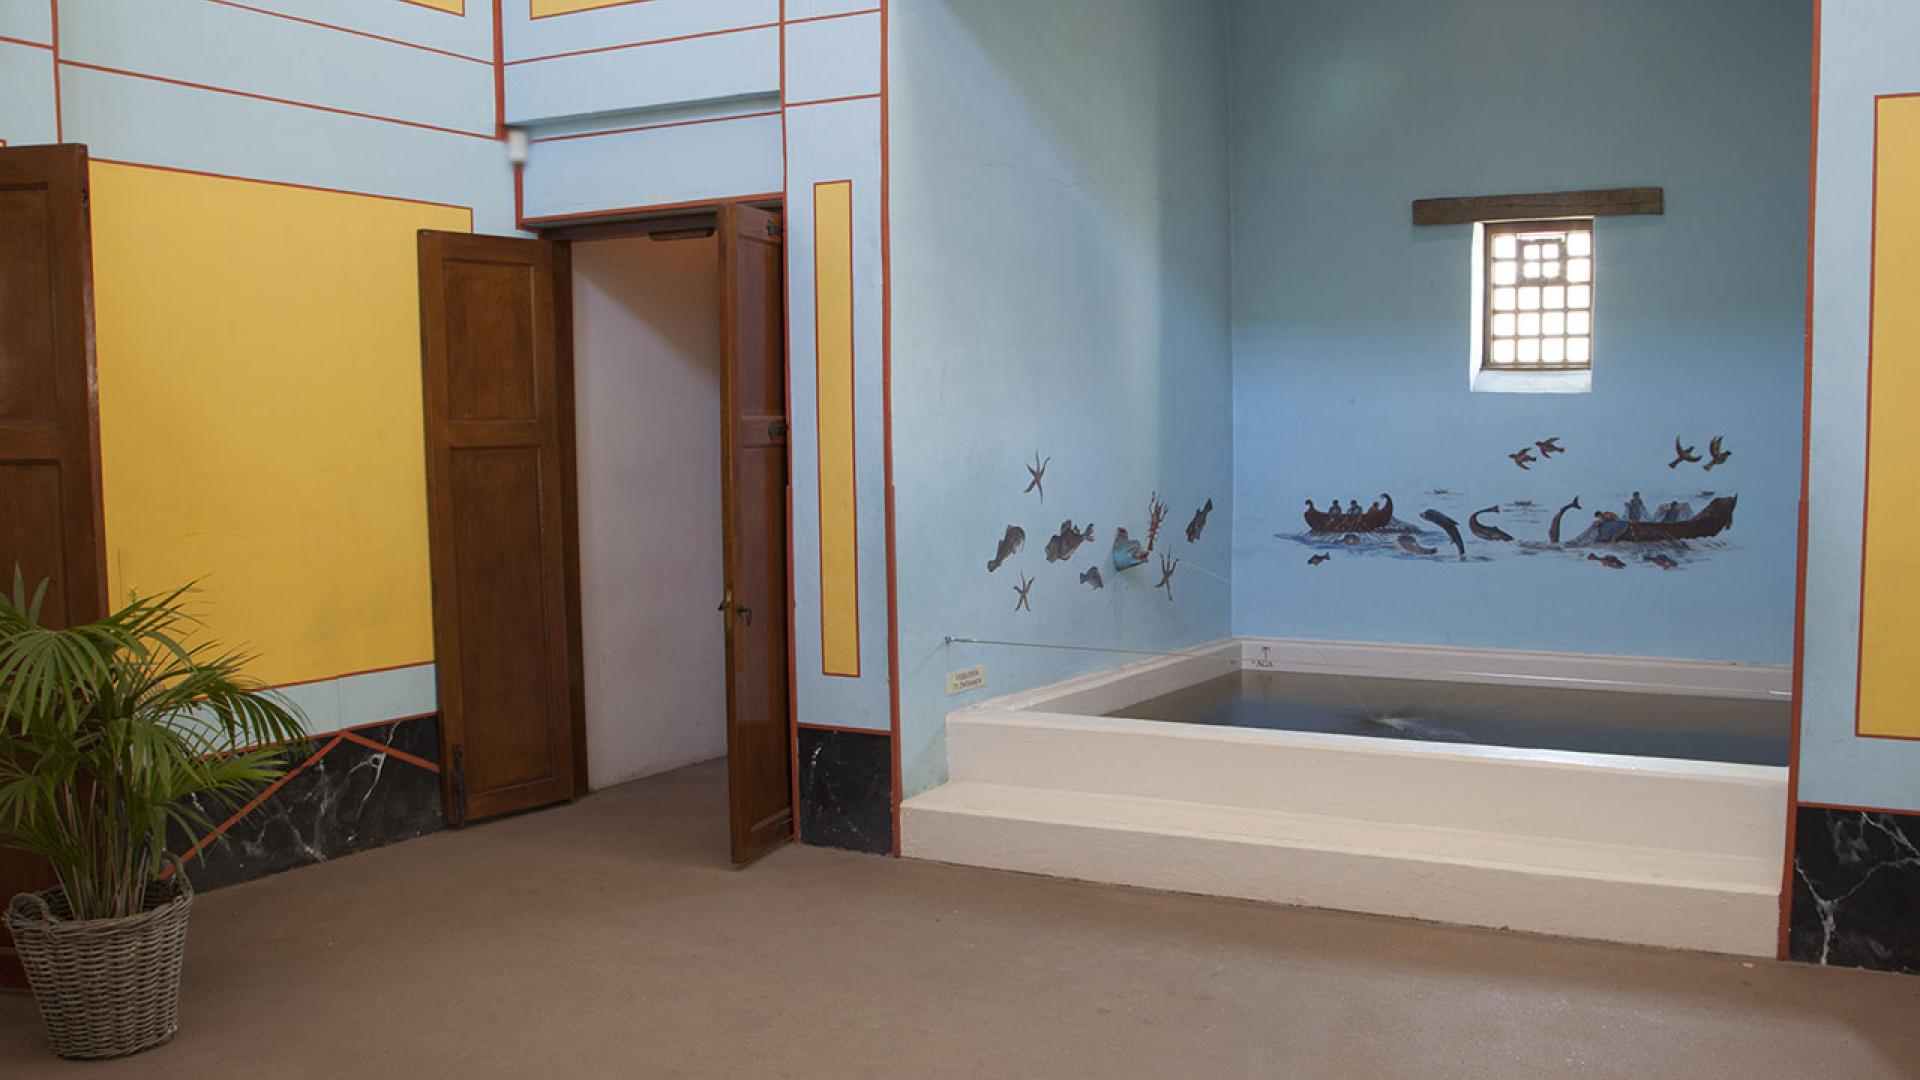 Bathhouse: Frigidarium